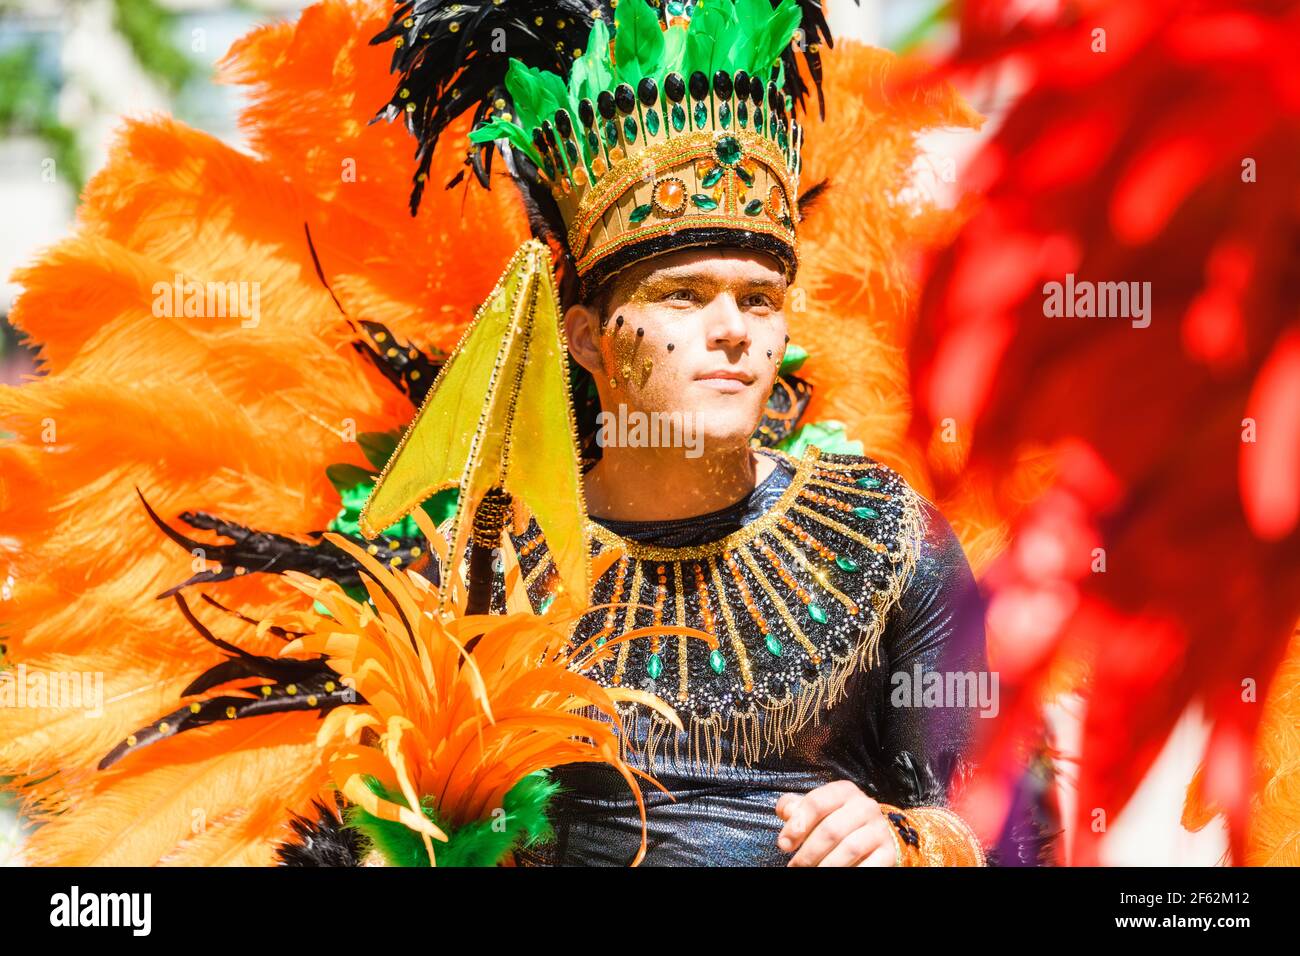 HAMMARKULLEN, SUÈDE - 25 MAI 2019 : visage d'un jeune homme dans le carnaval annuel à Hammarkullen, Suède Banque D'Images